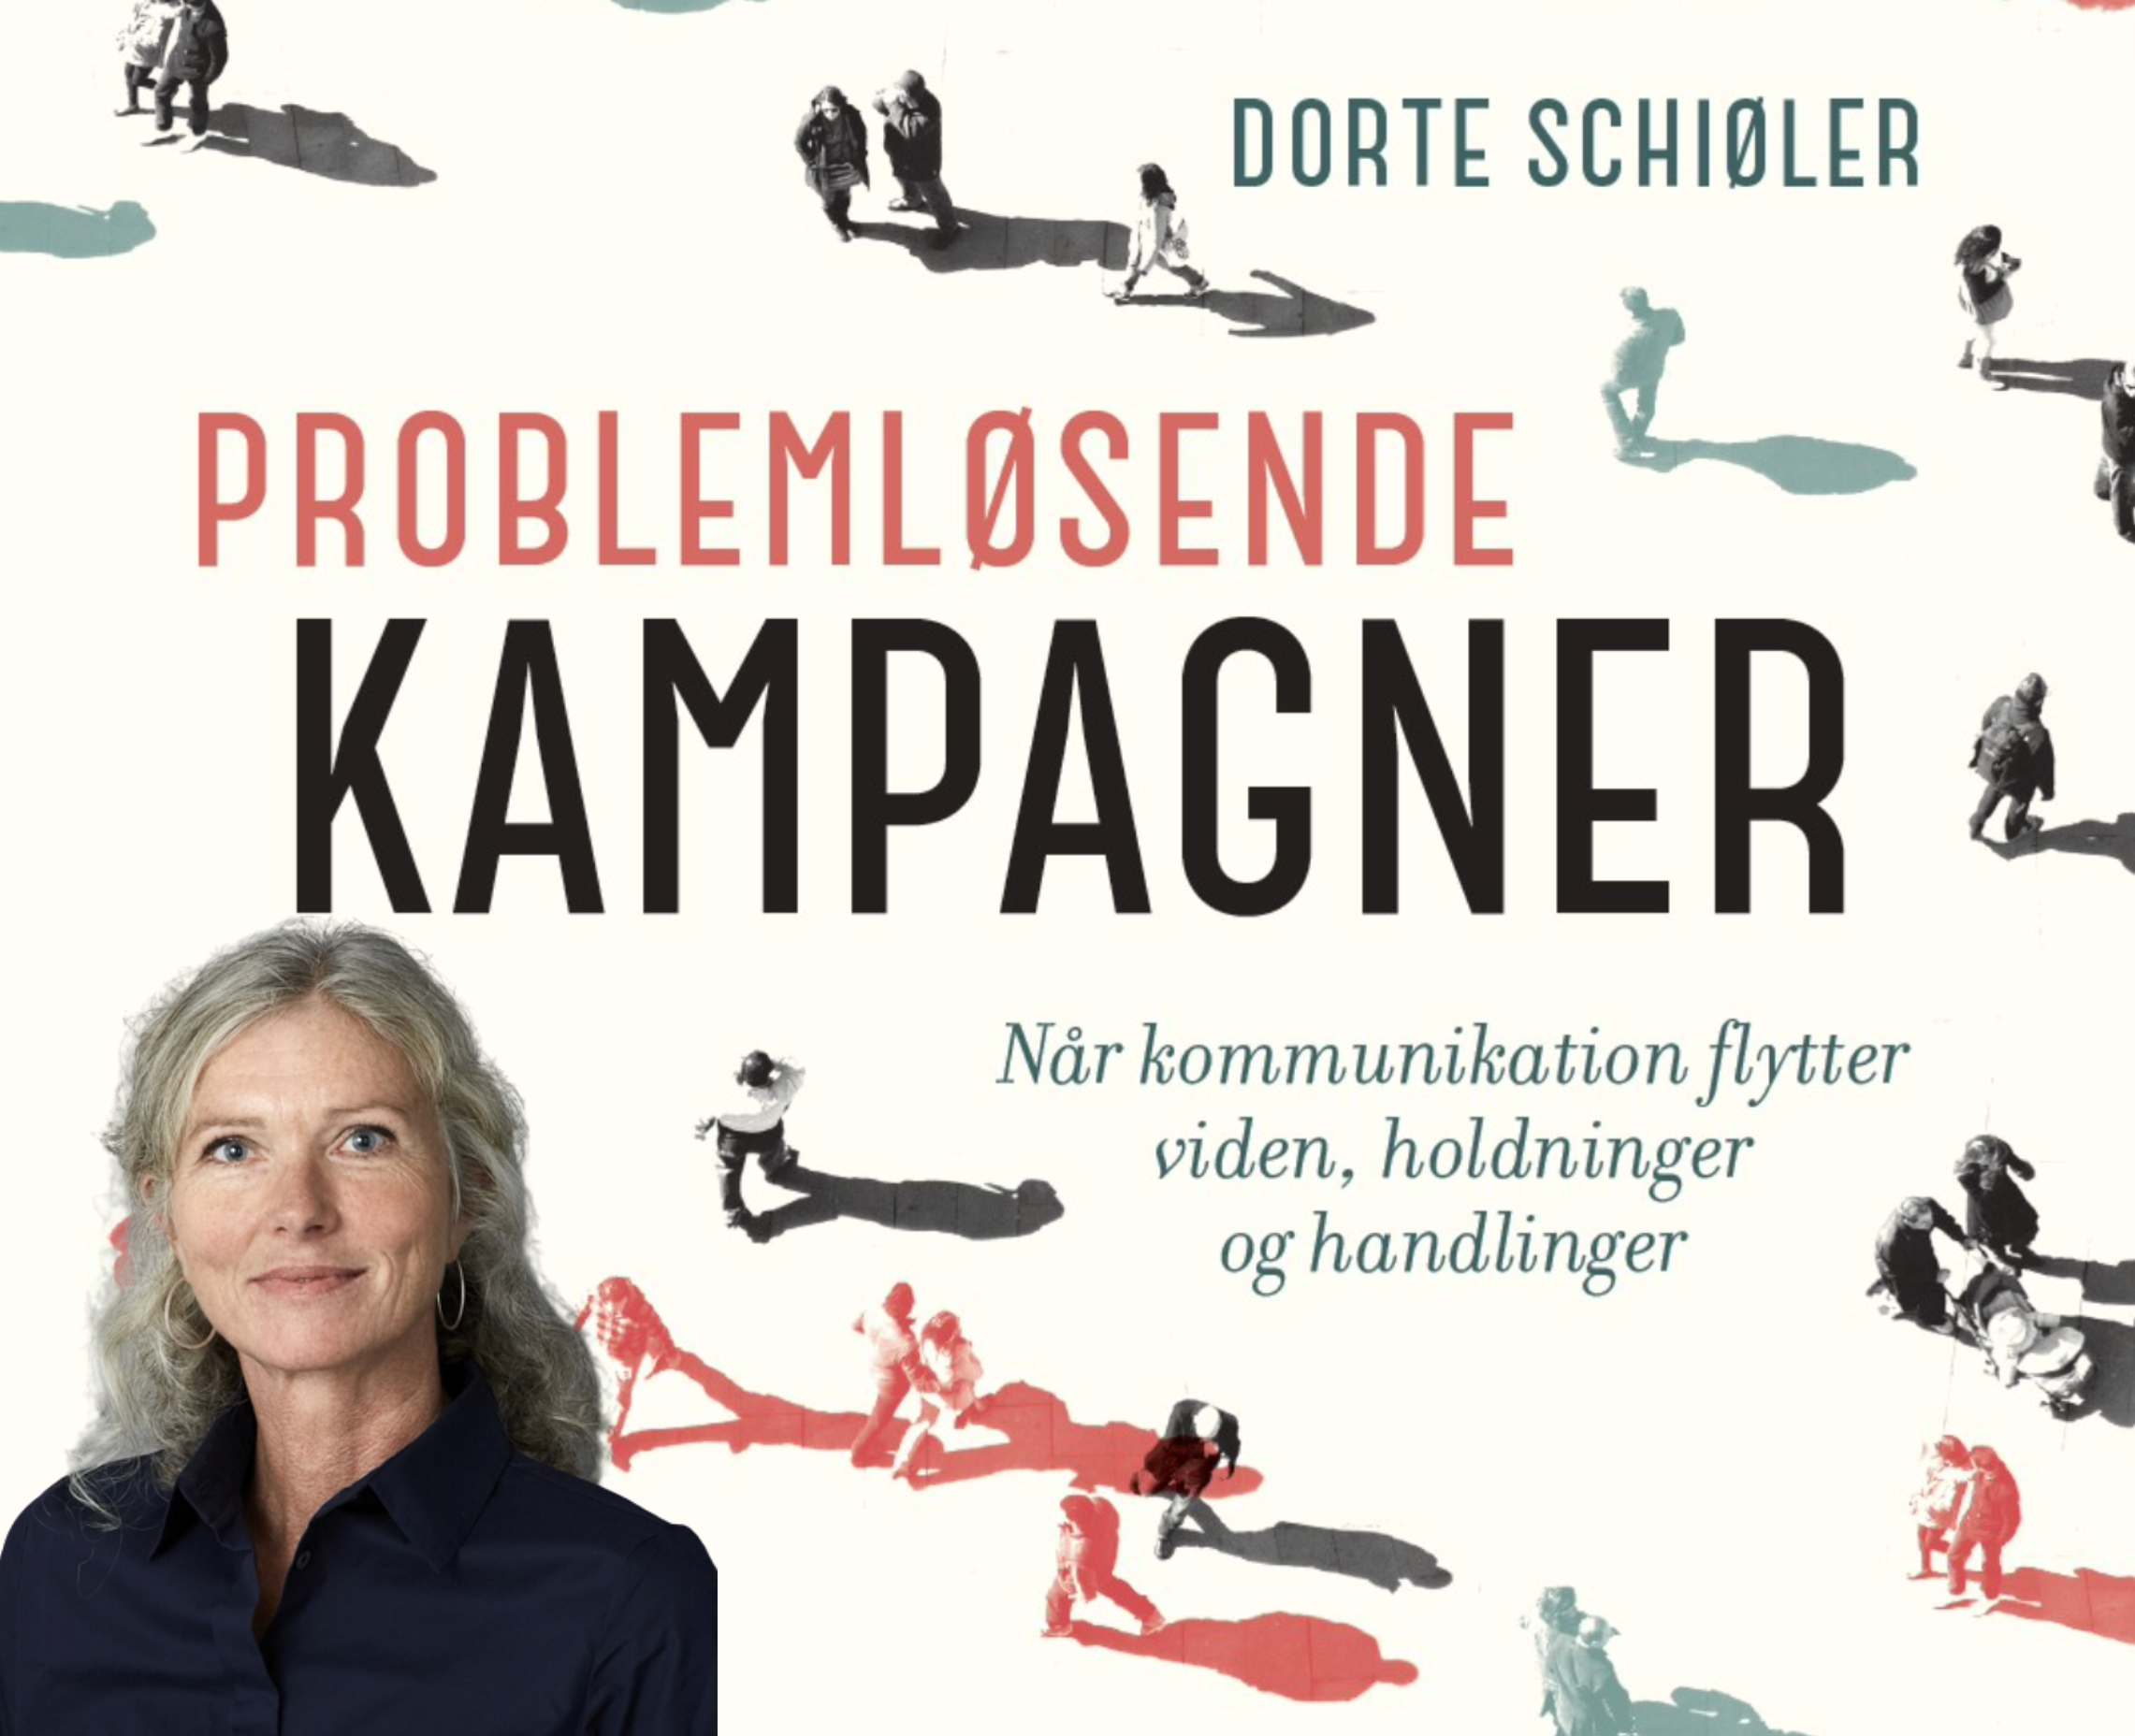 Ifølge Dorte Schiøler kræver hver type kampagne sine egne faglige kompetencer og planlægningsprocesser.